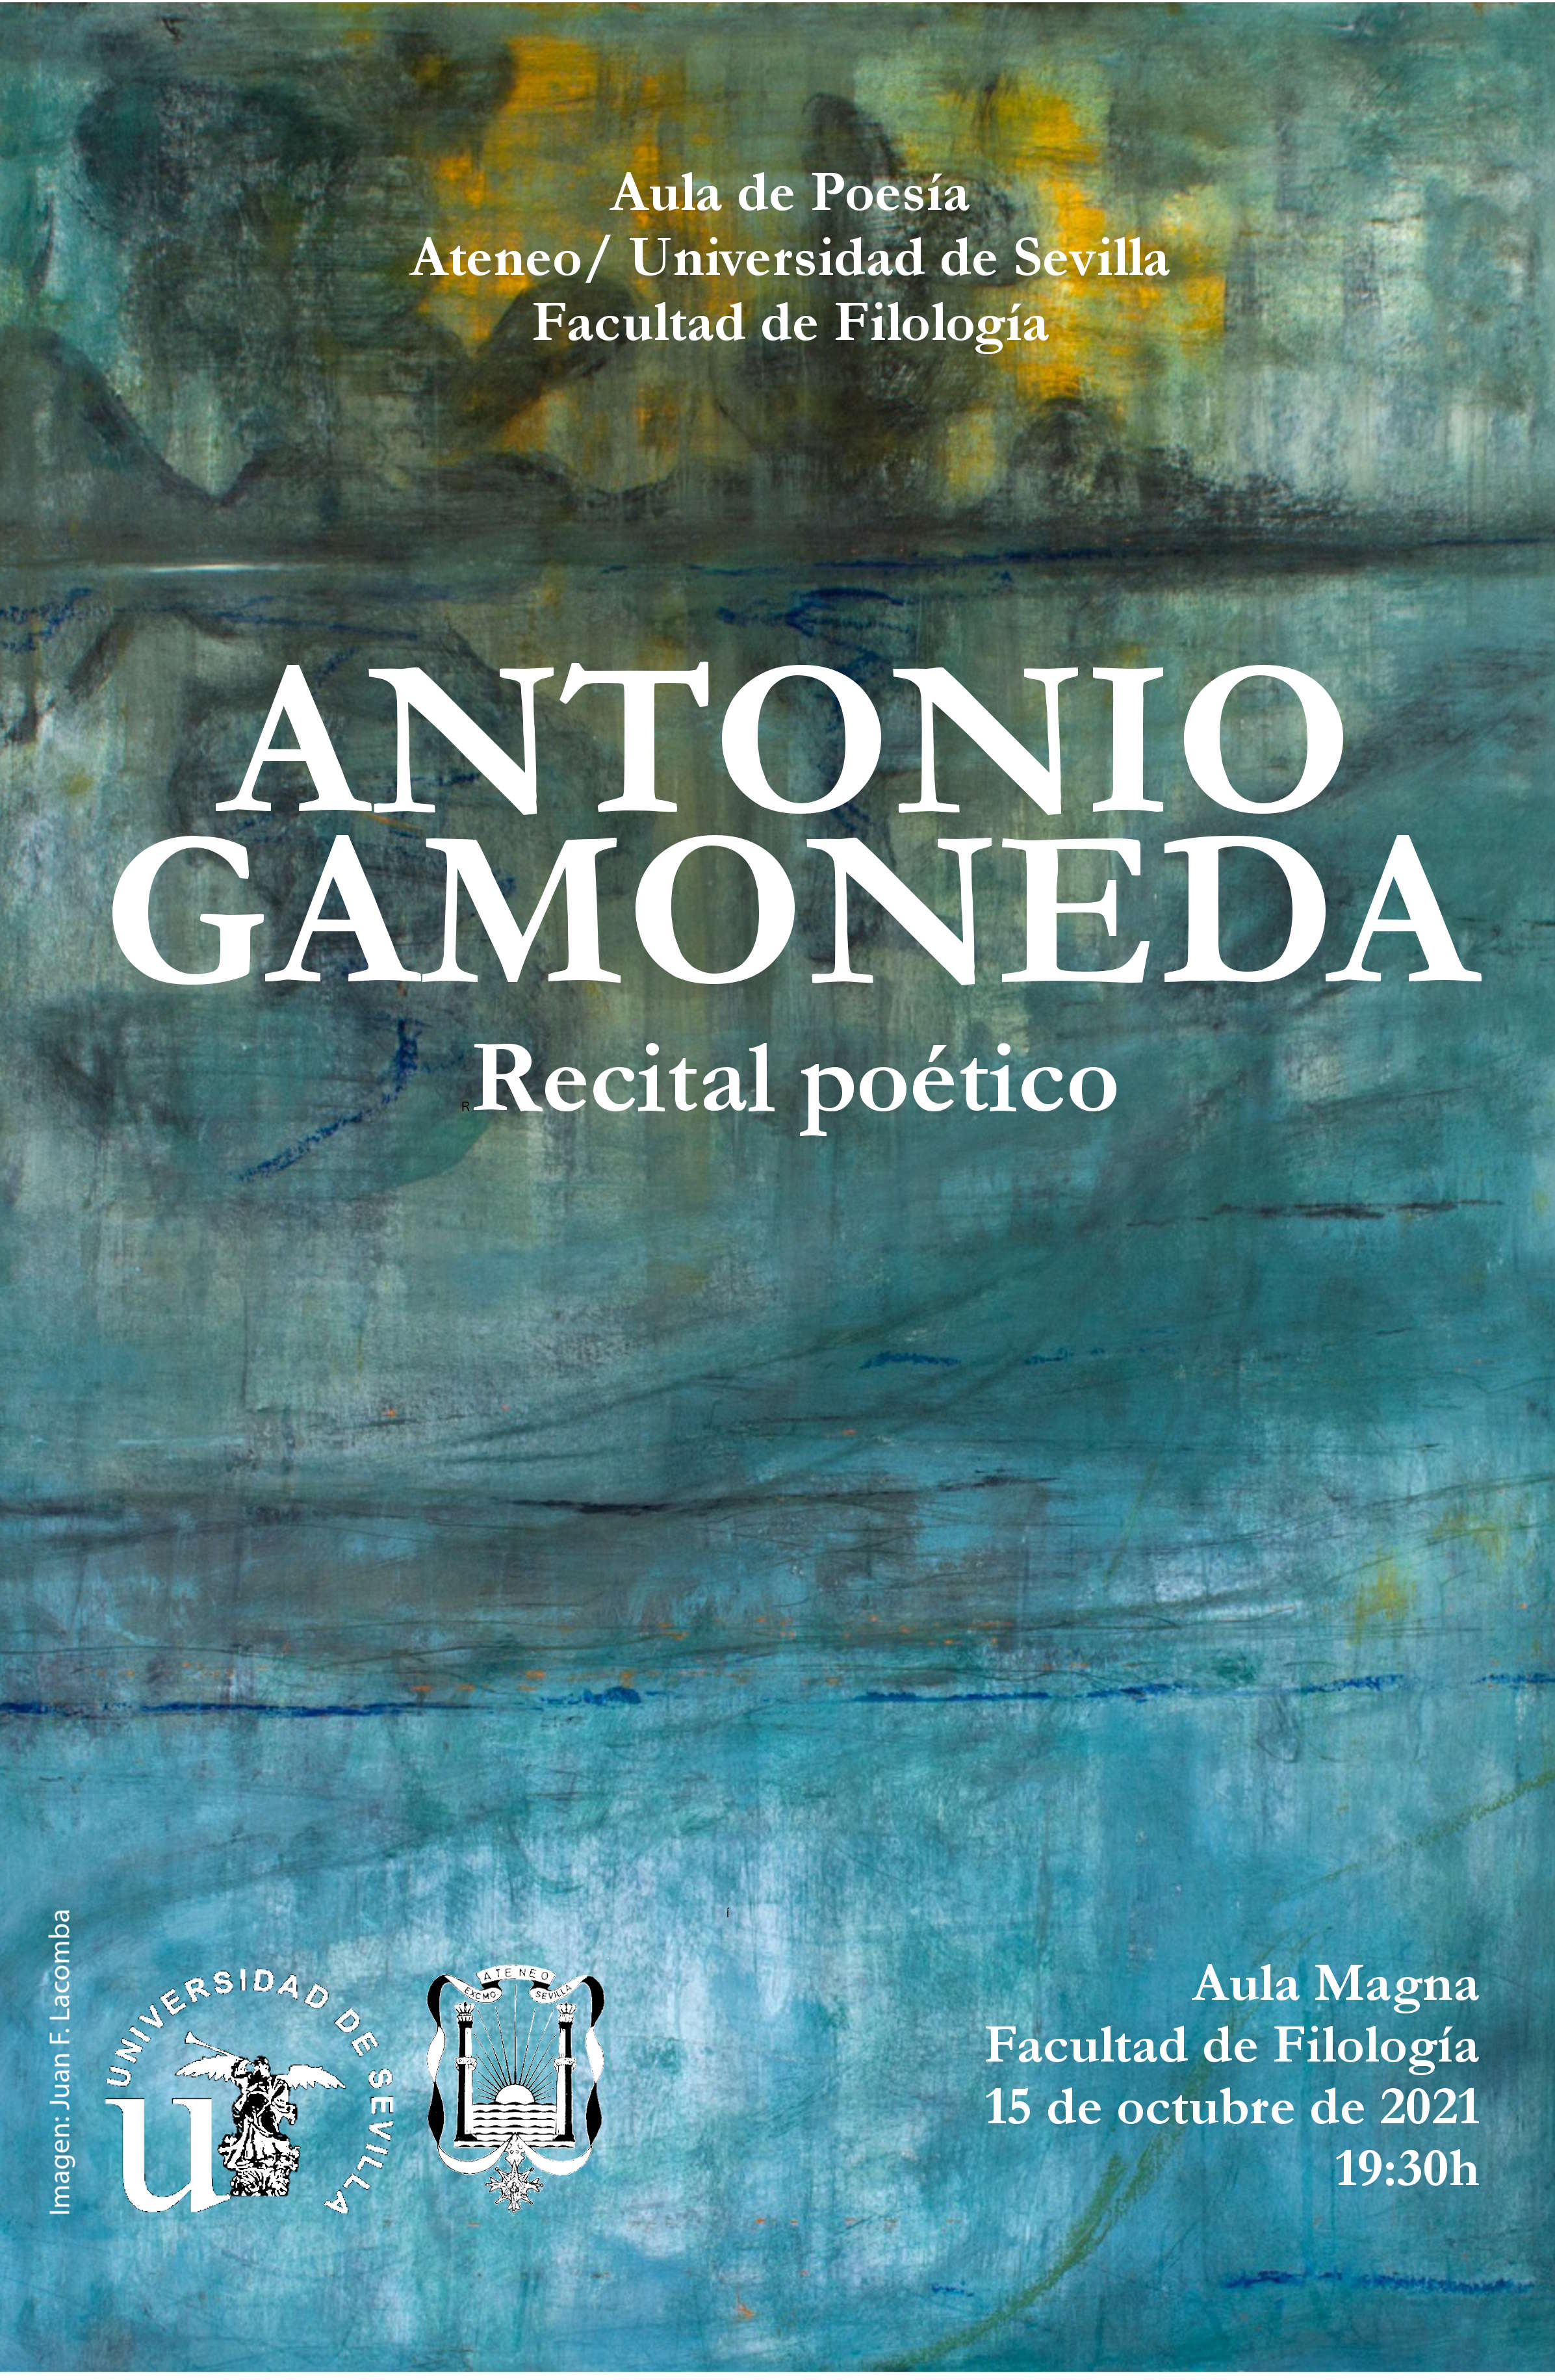 Recital poético de Antonio Gamoneda